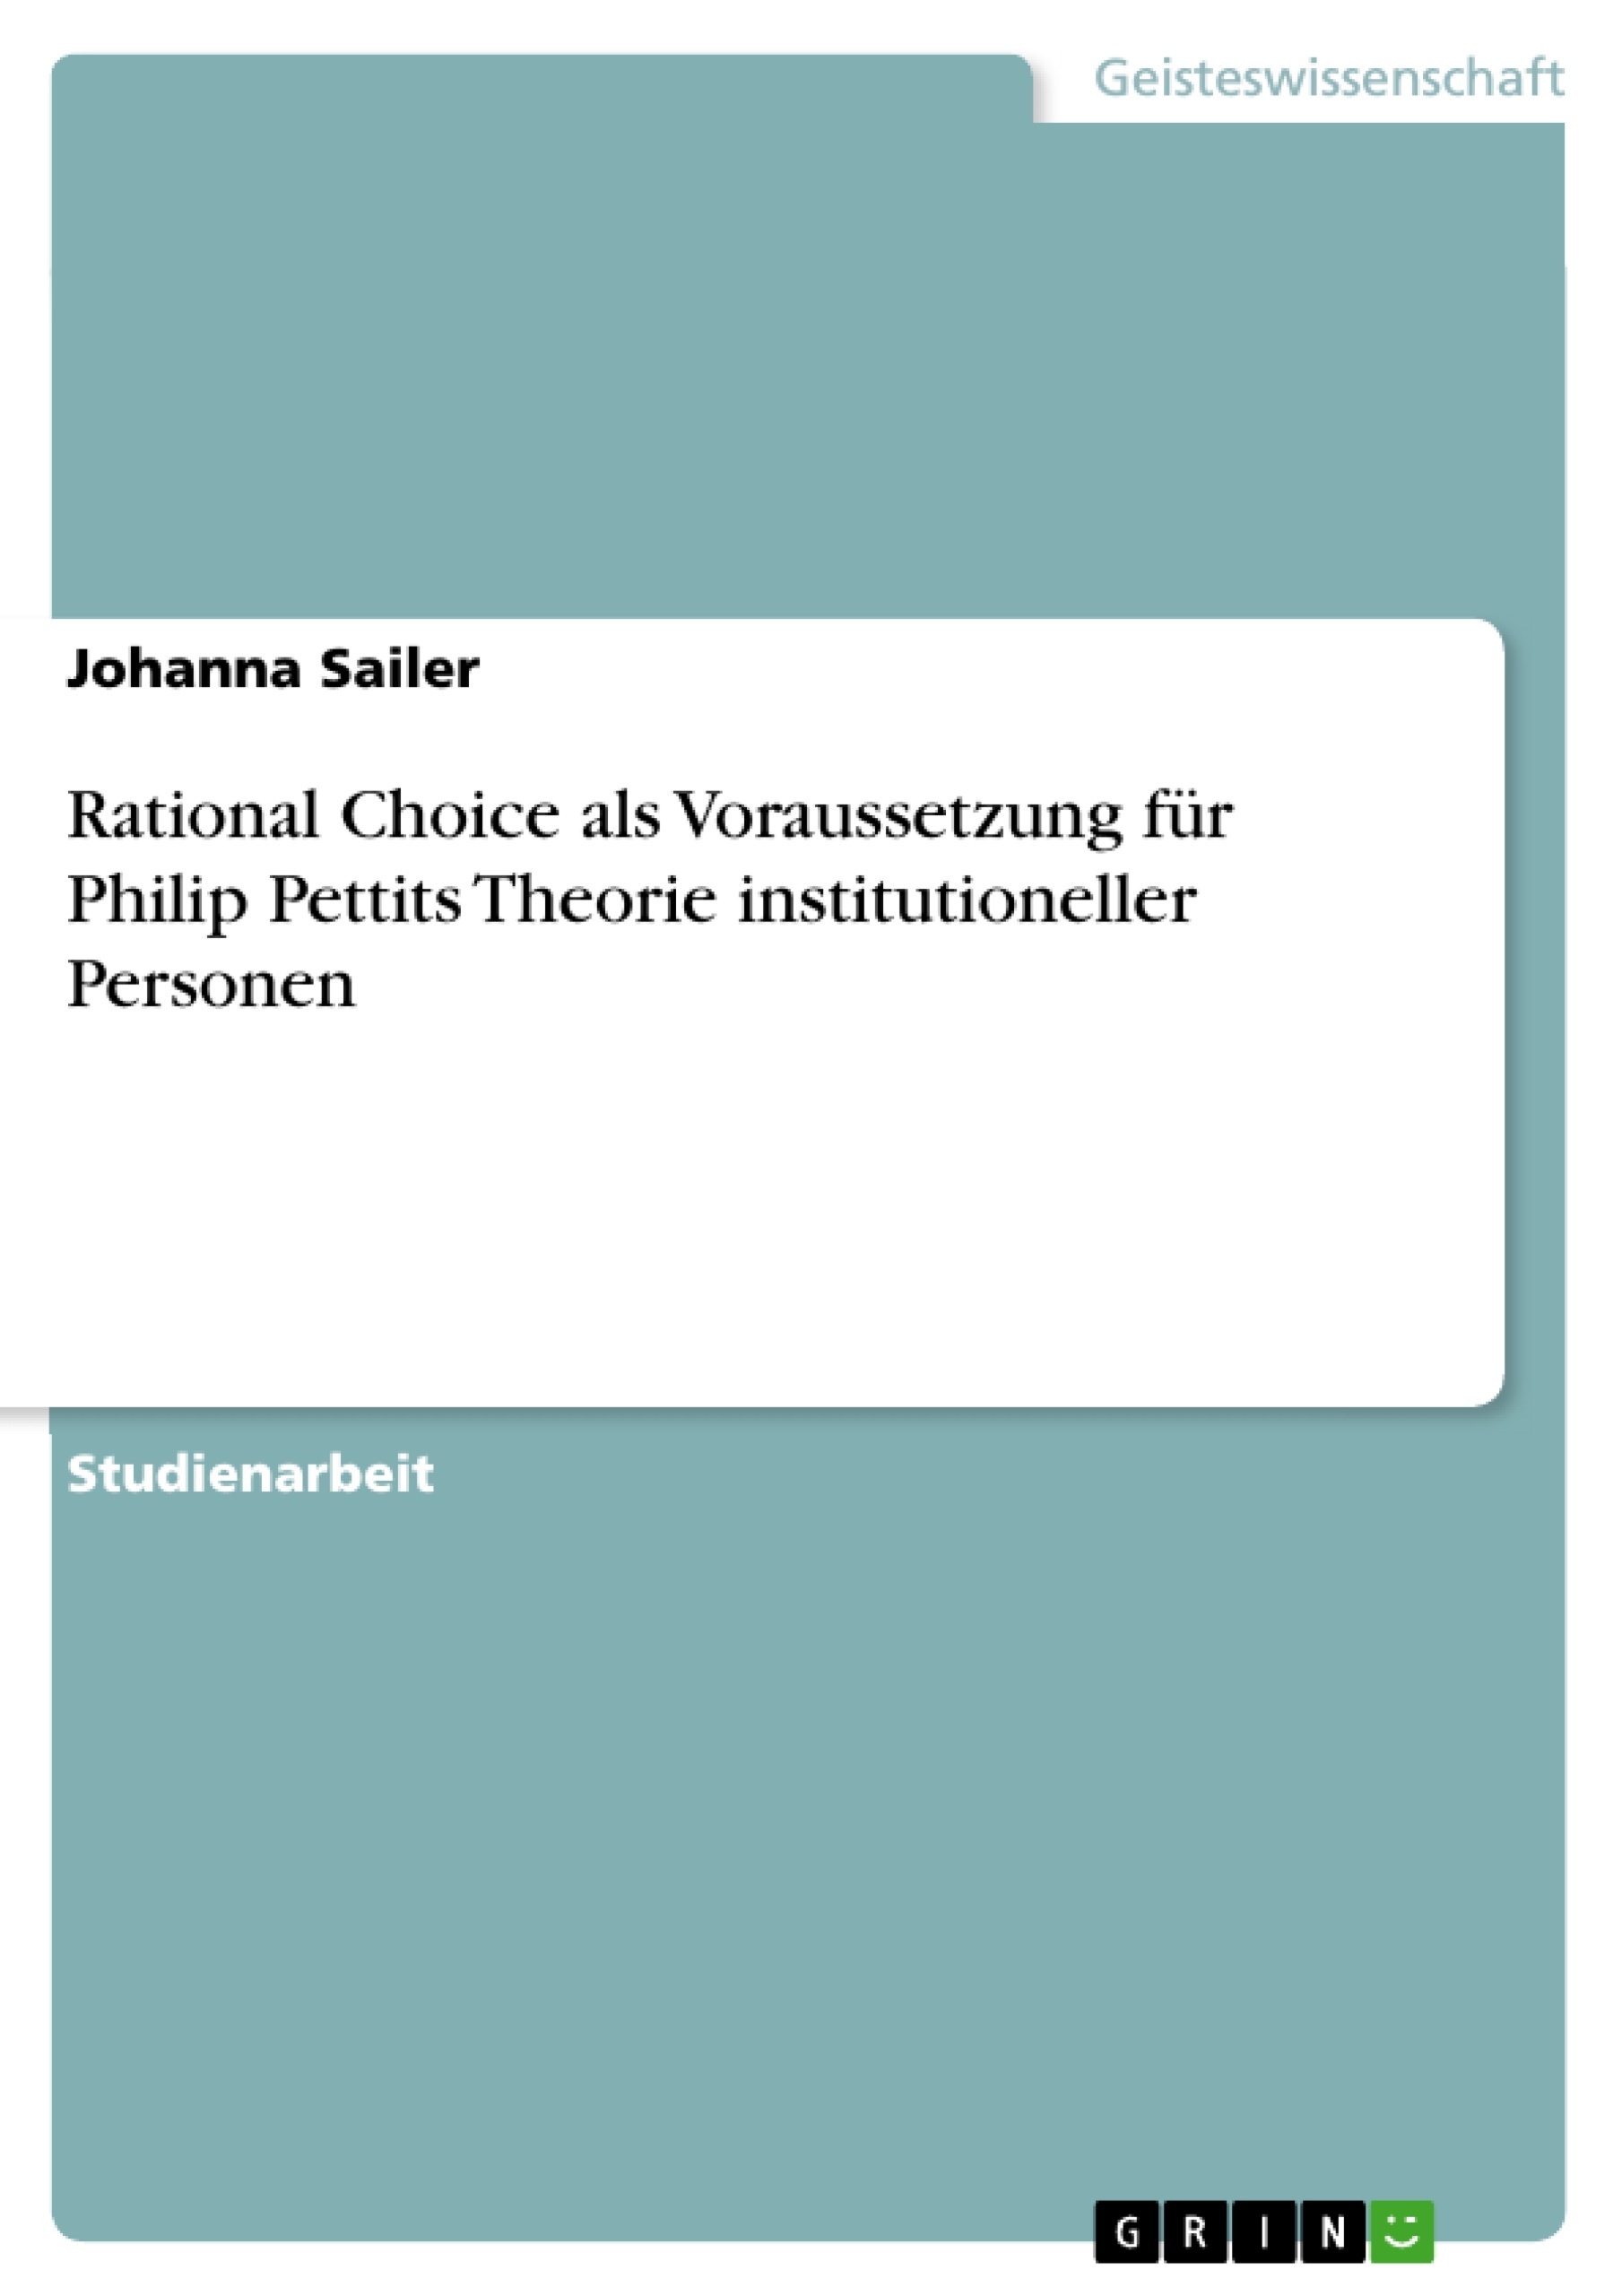 Title: Rational Choice als Voraussetzung für Philip Pettits Theorie institutioneller Personen